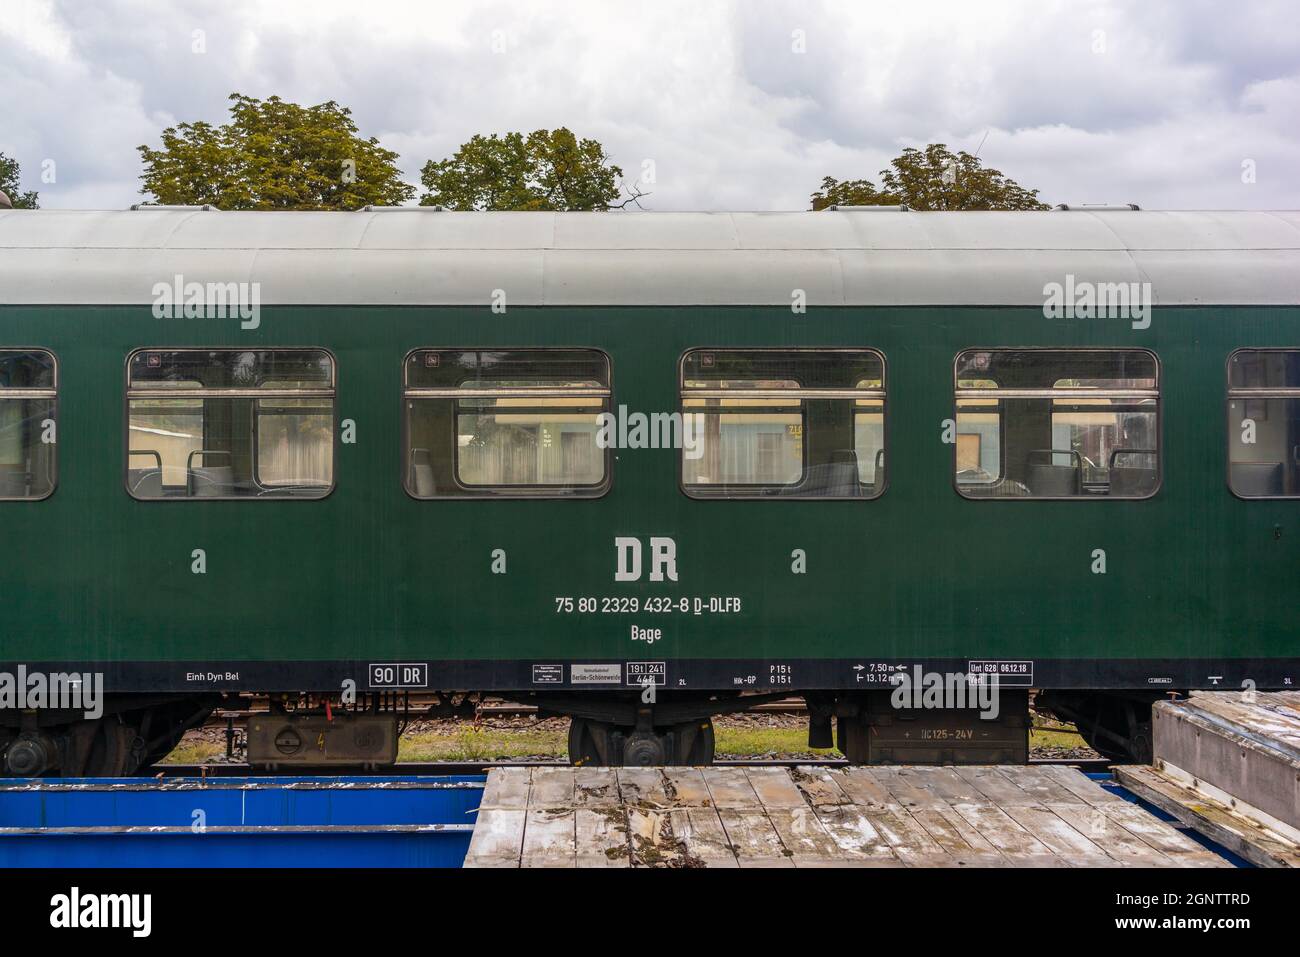 Historic vintage railway Deutsche Reichsbahn (DR) German passenger train compartment (Wagen 30) built in 1960, Berlin, Germany, Europe Stock Photo